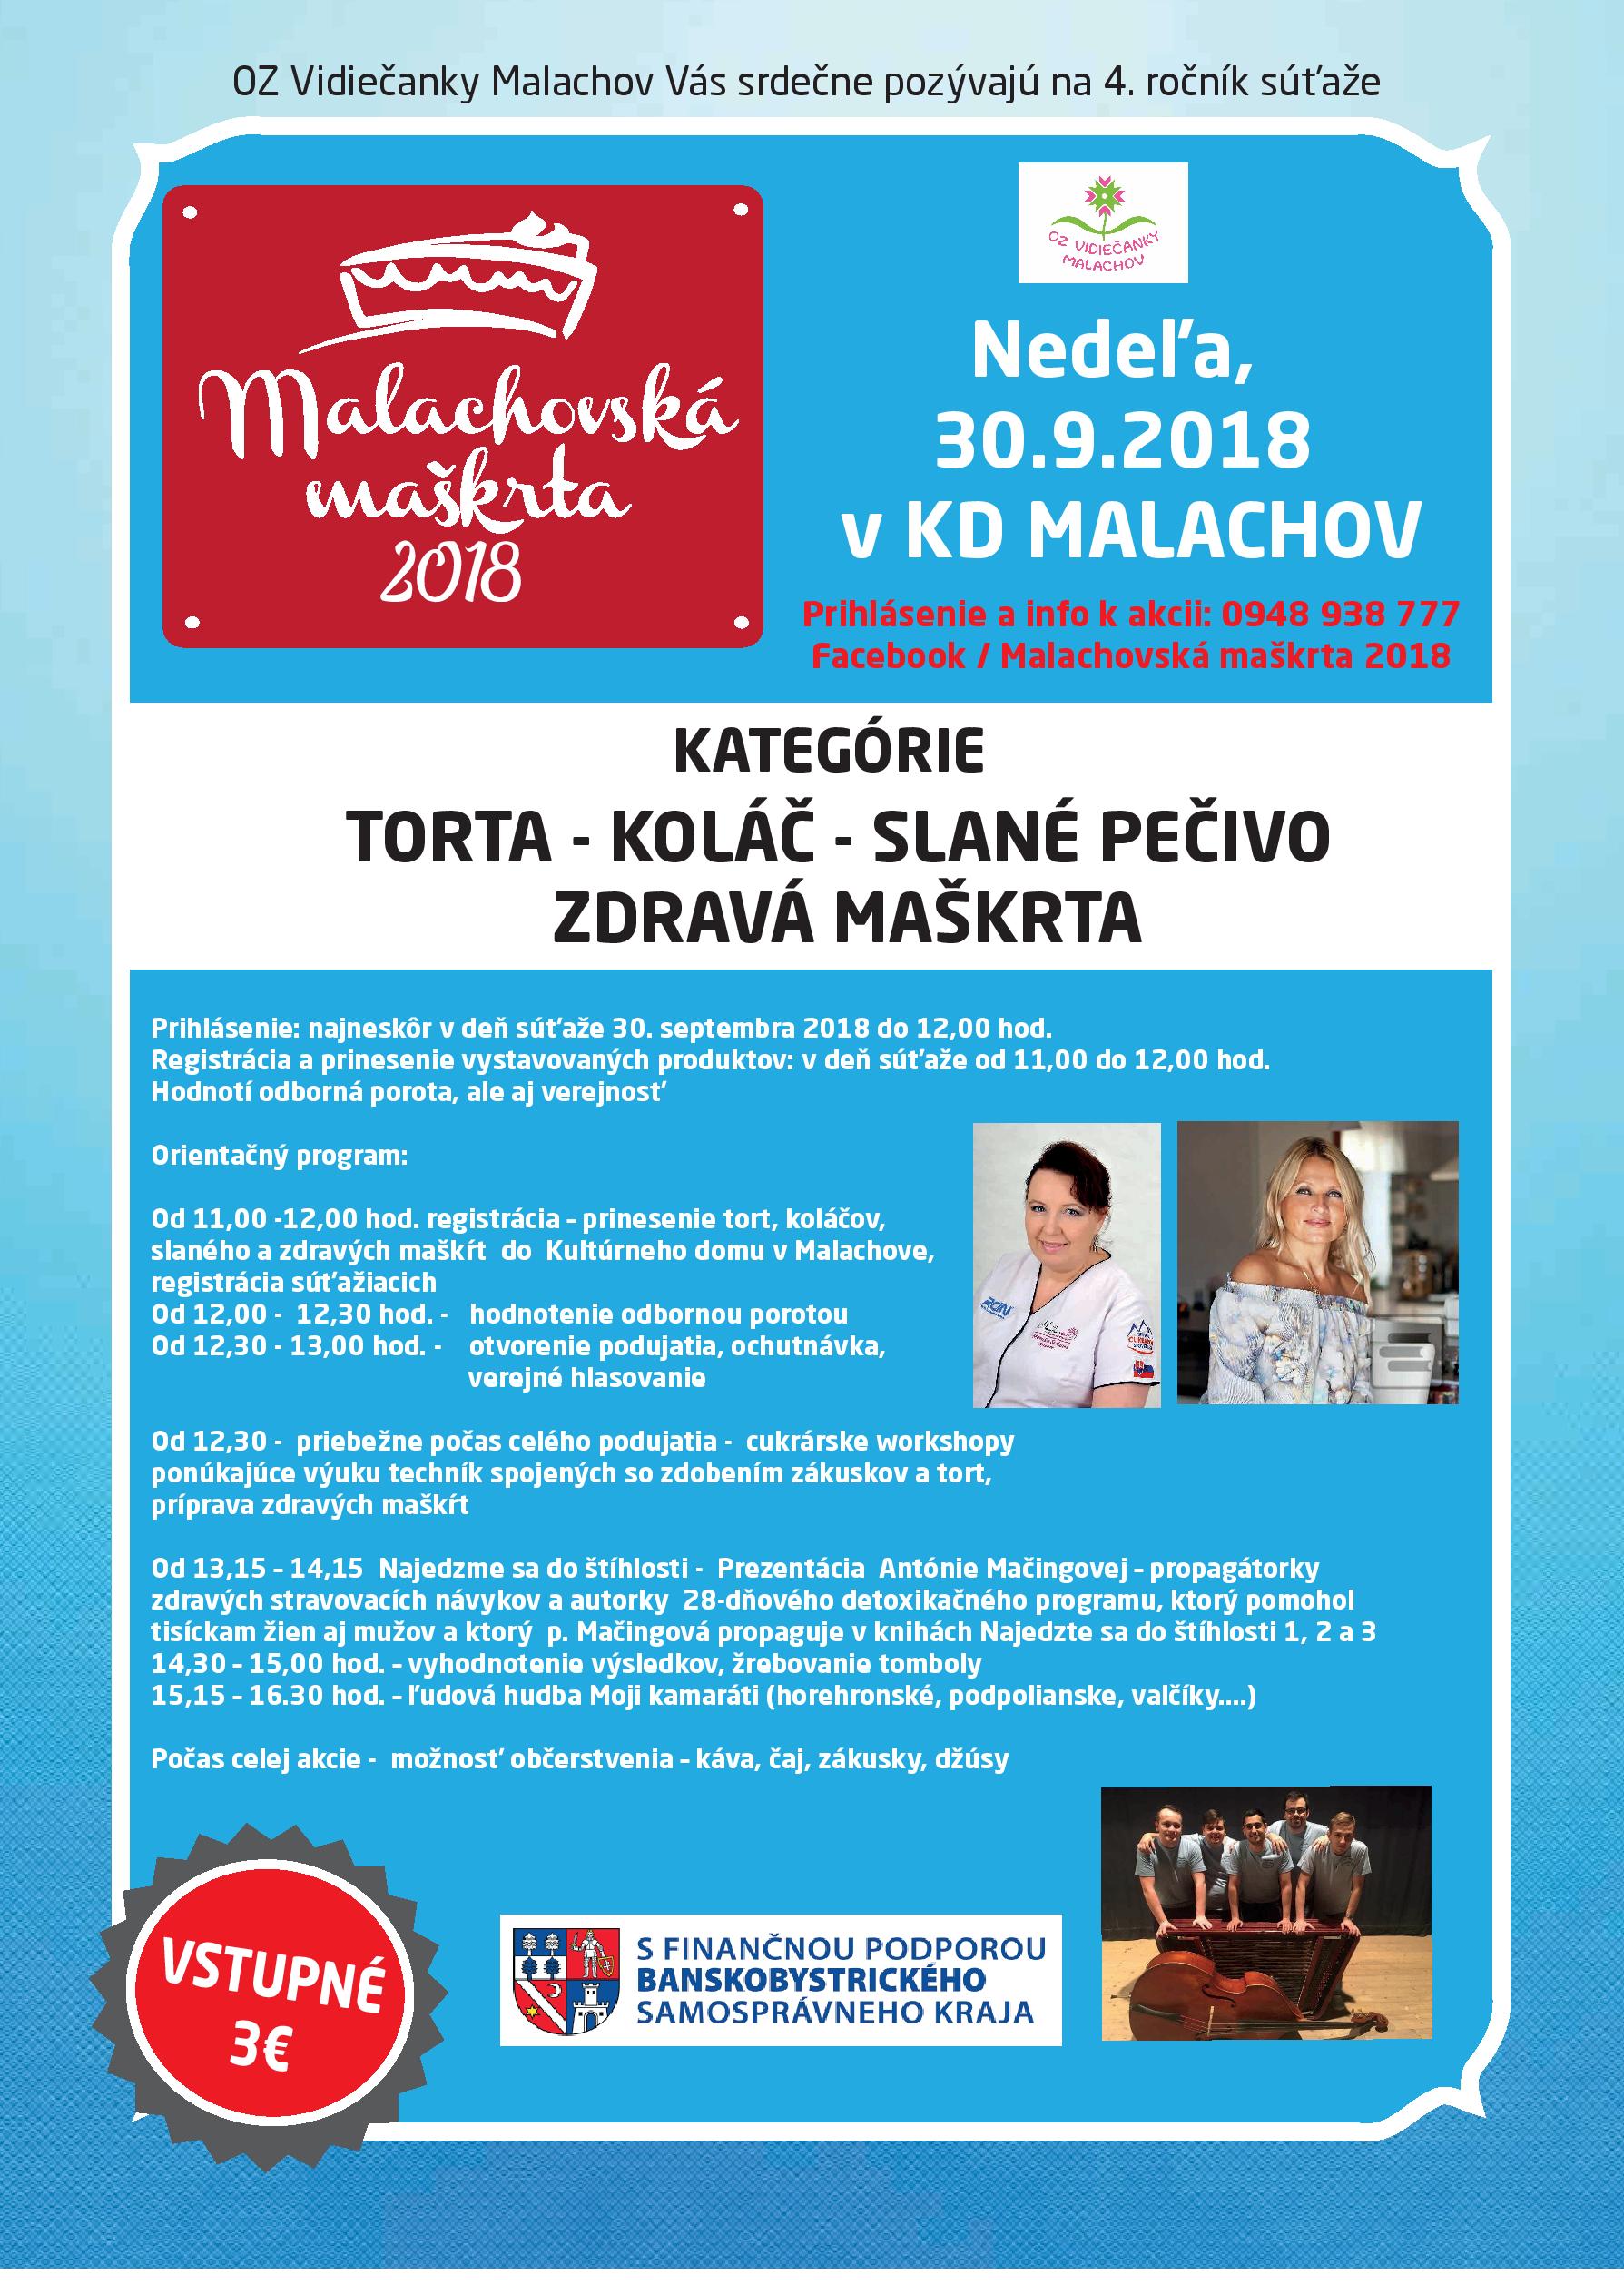 Malachovská maškrta 2018 - 4. ročník